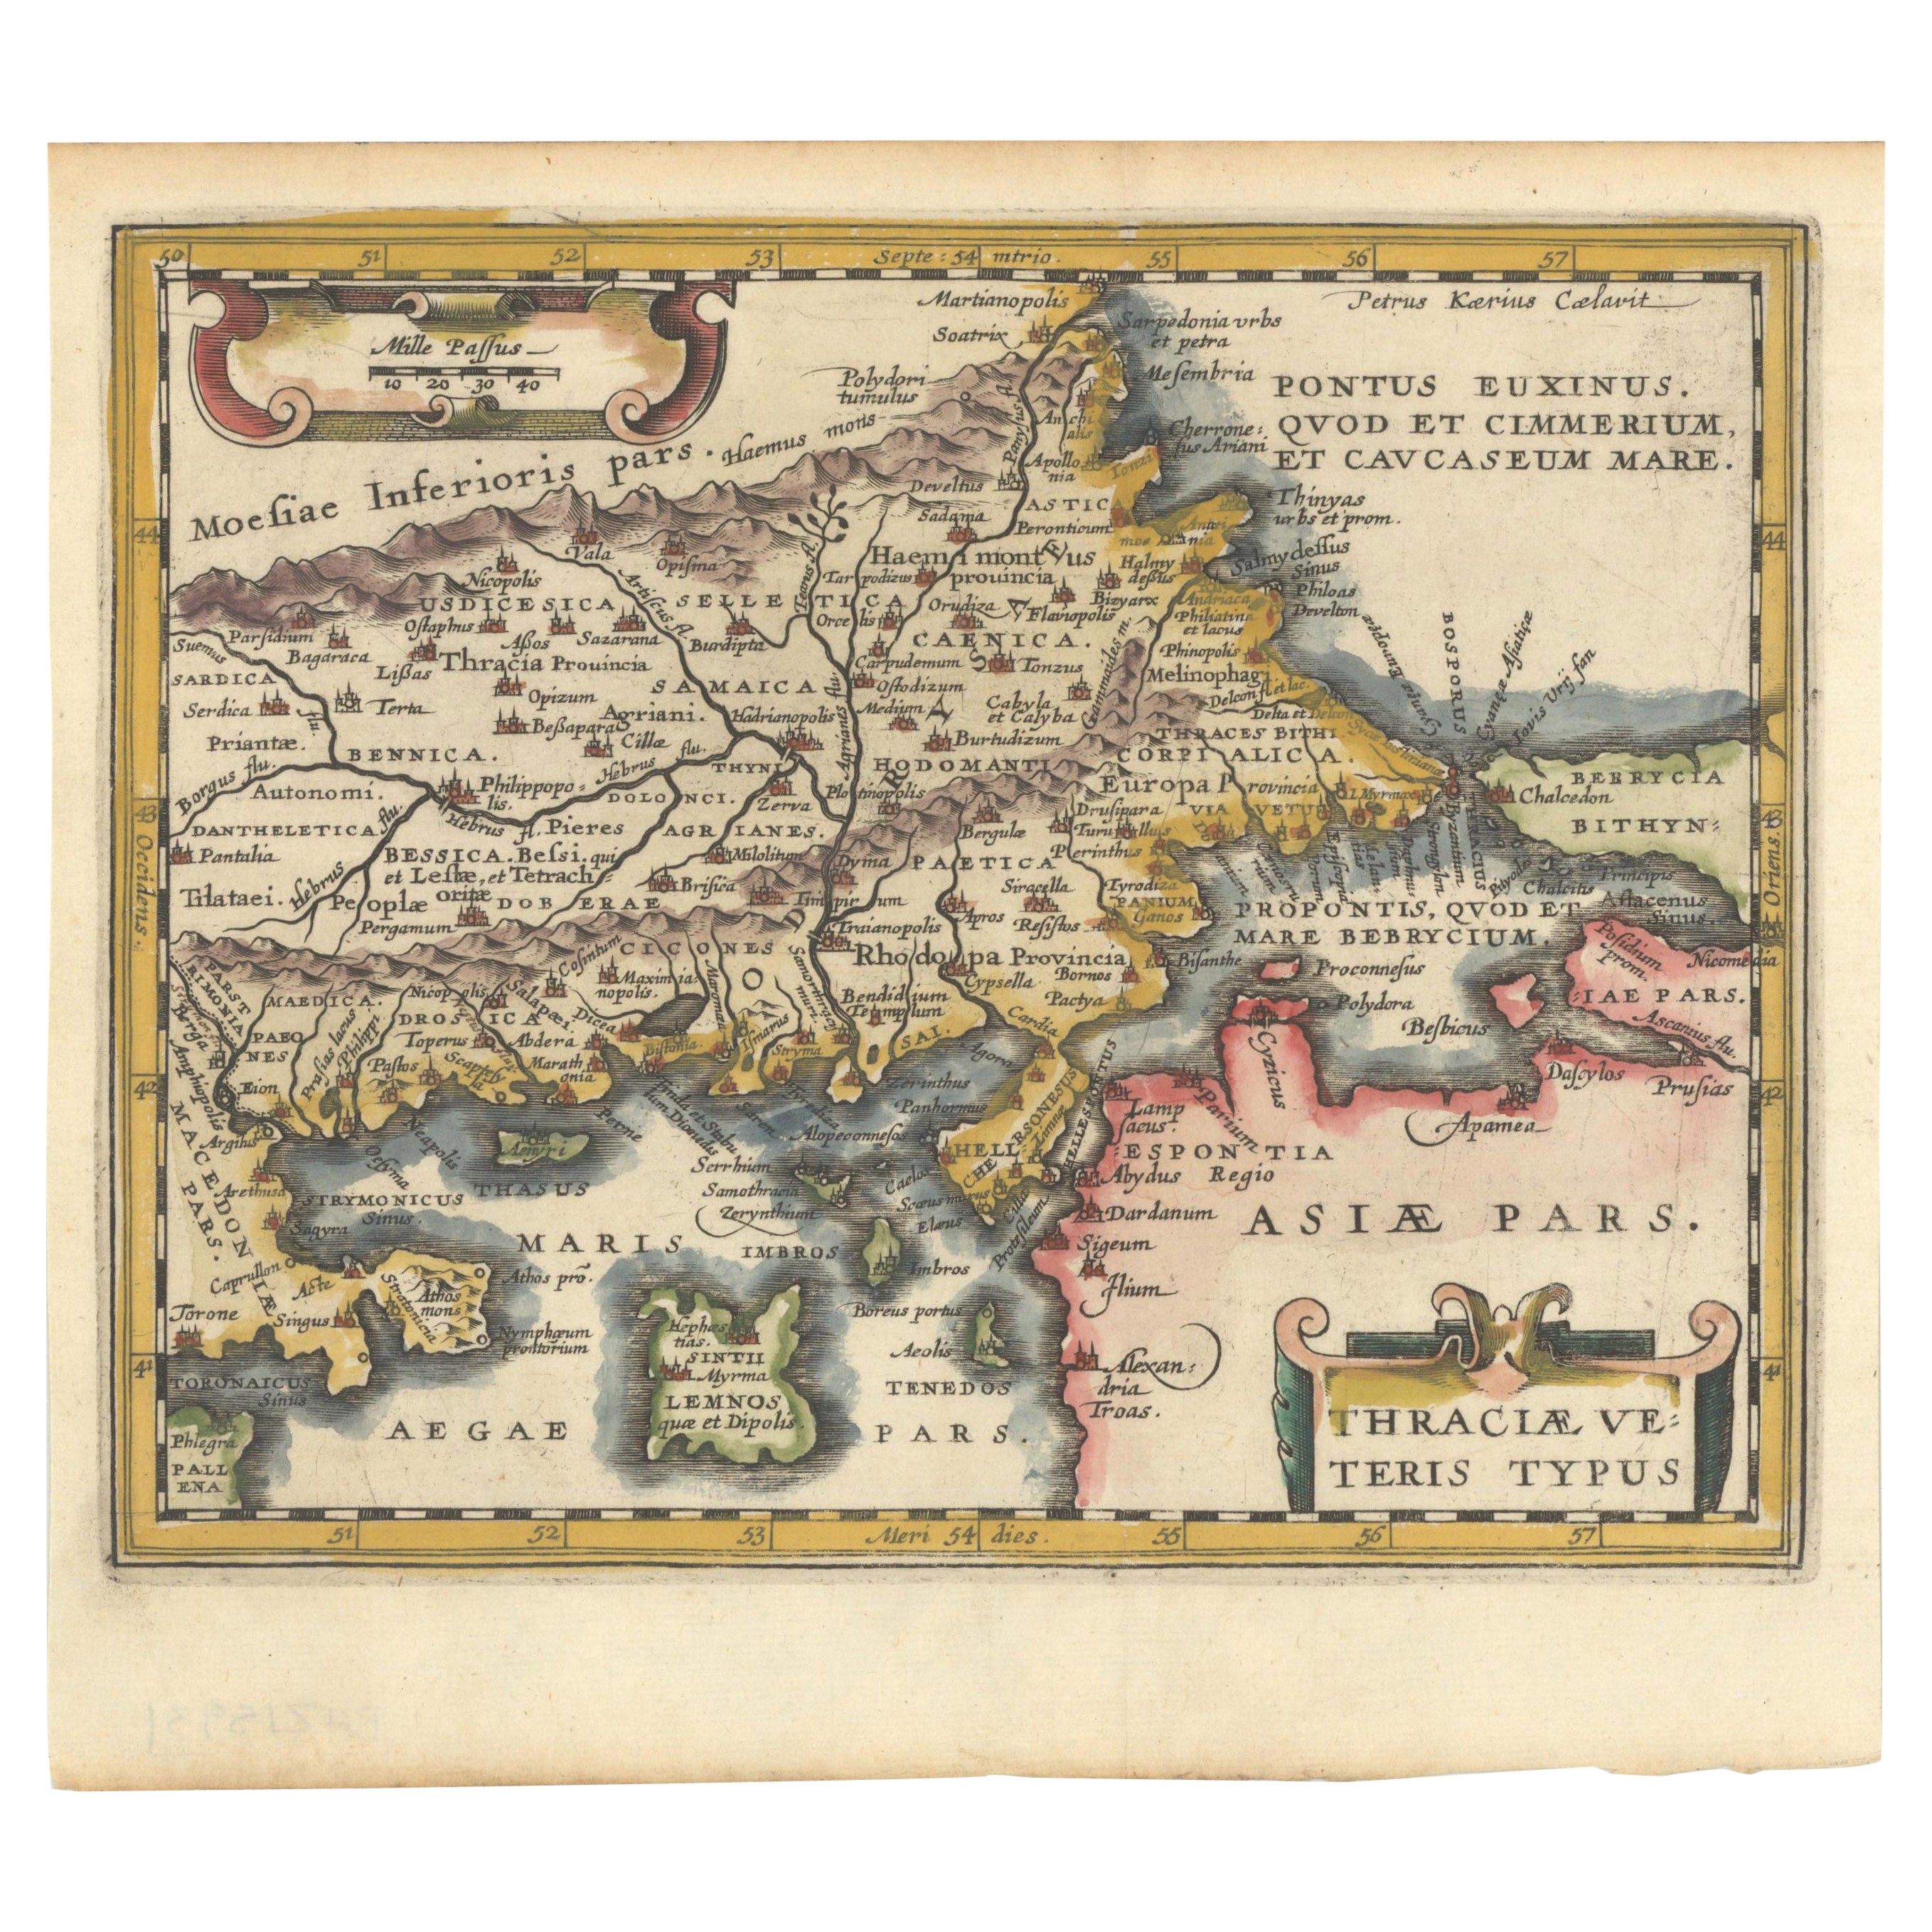 Originale alte Karte des Nordosten Griechenlands und des Nordwestens der Türkei, veröffentlicht 1661